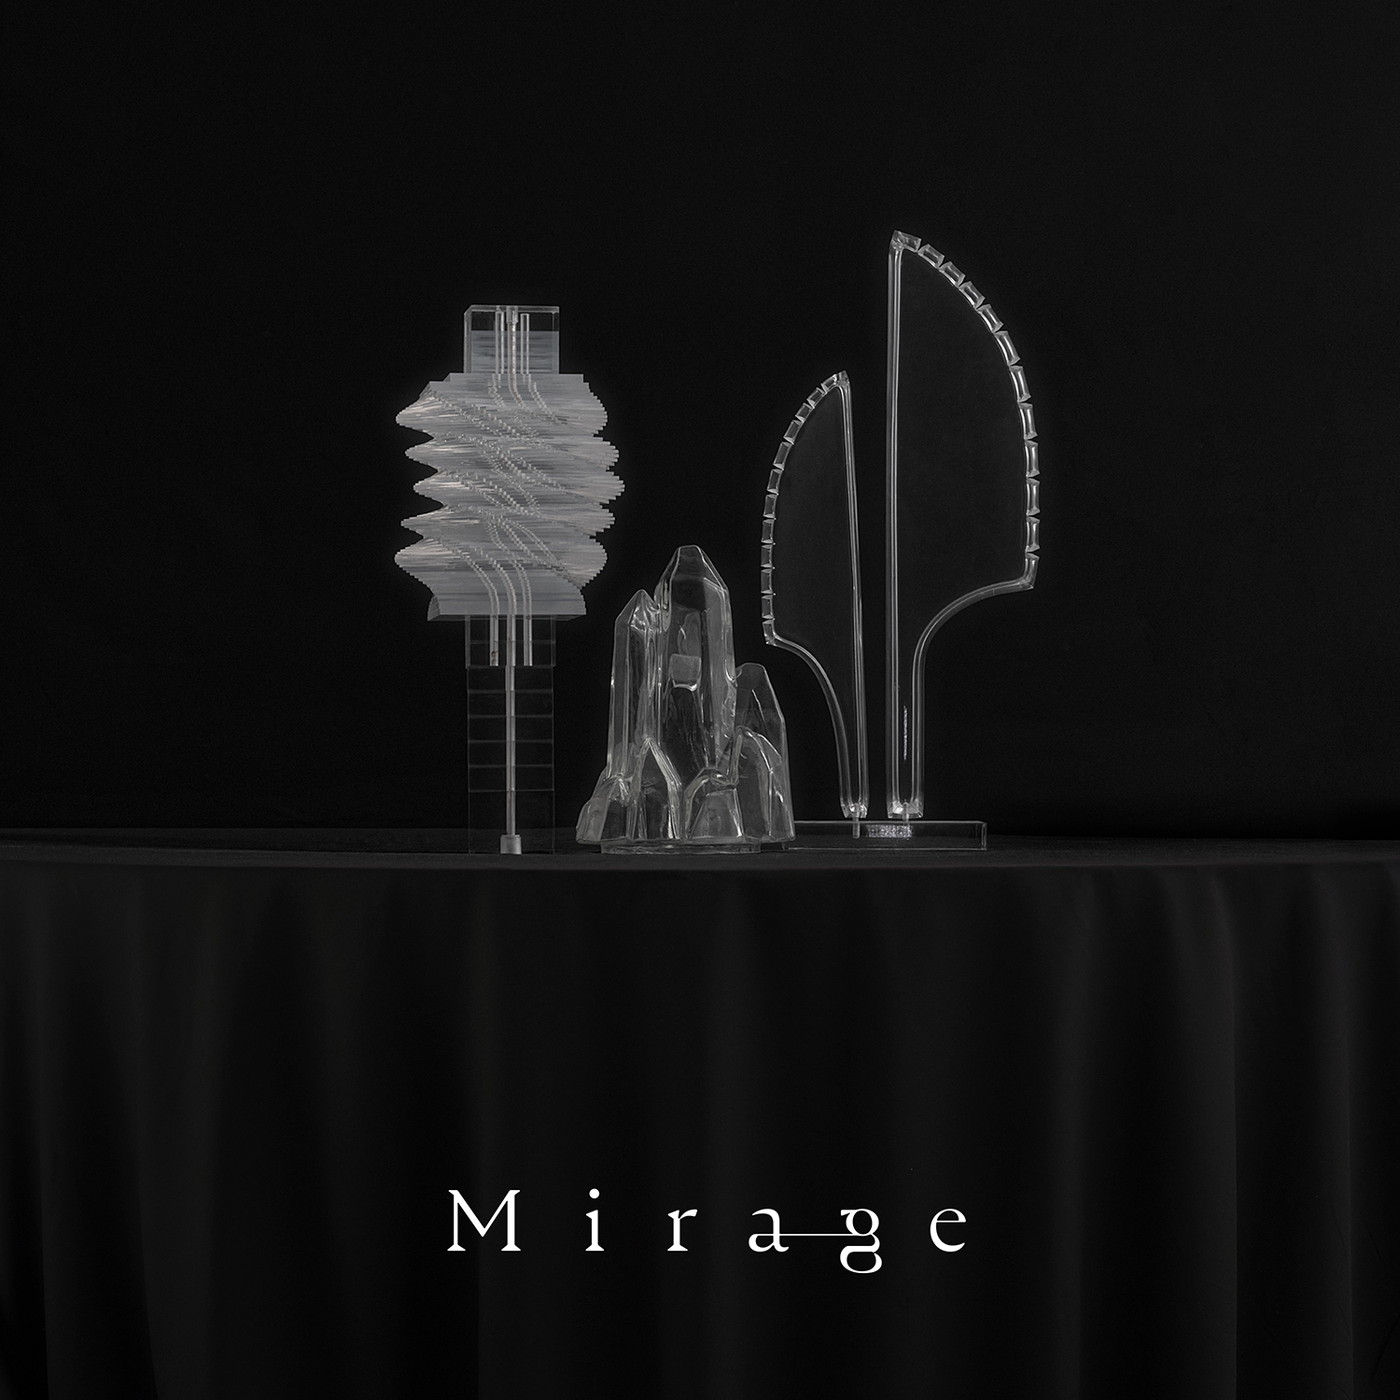 長澤まさみ主演ドラマ『エルピス』の主題歌「Mirage」、STUTSがプロデュースするMirage Collectiveが担当